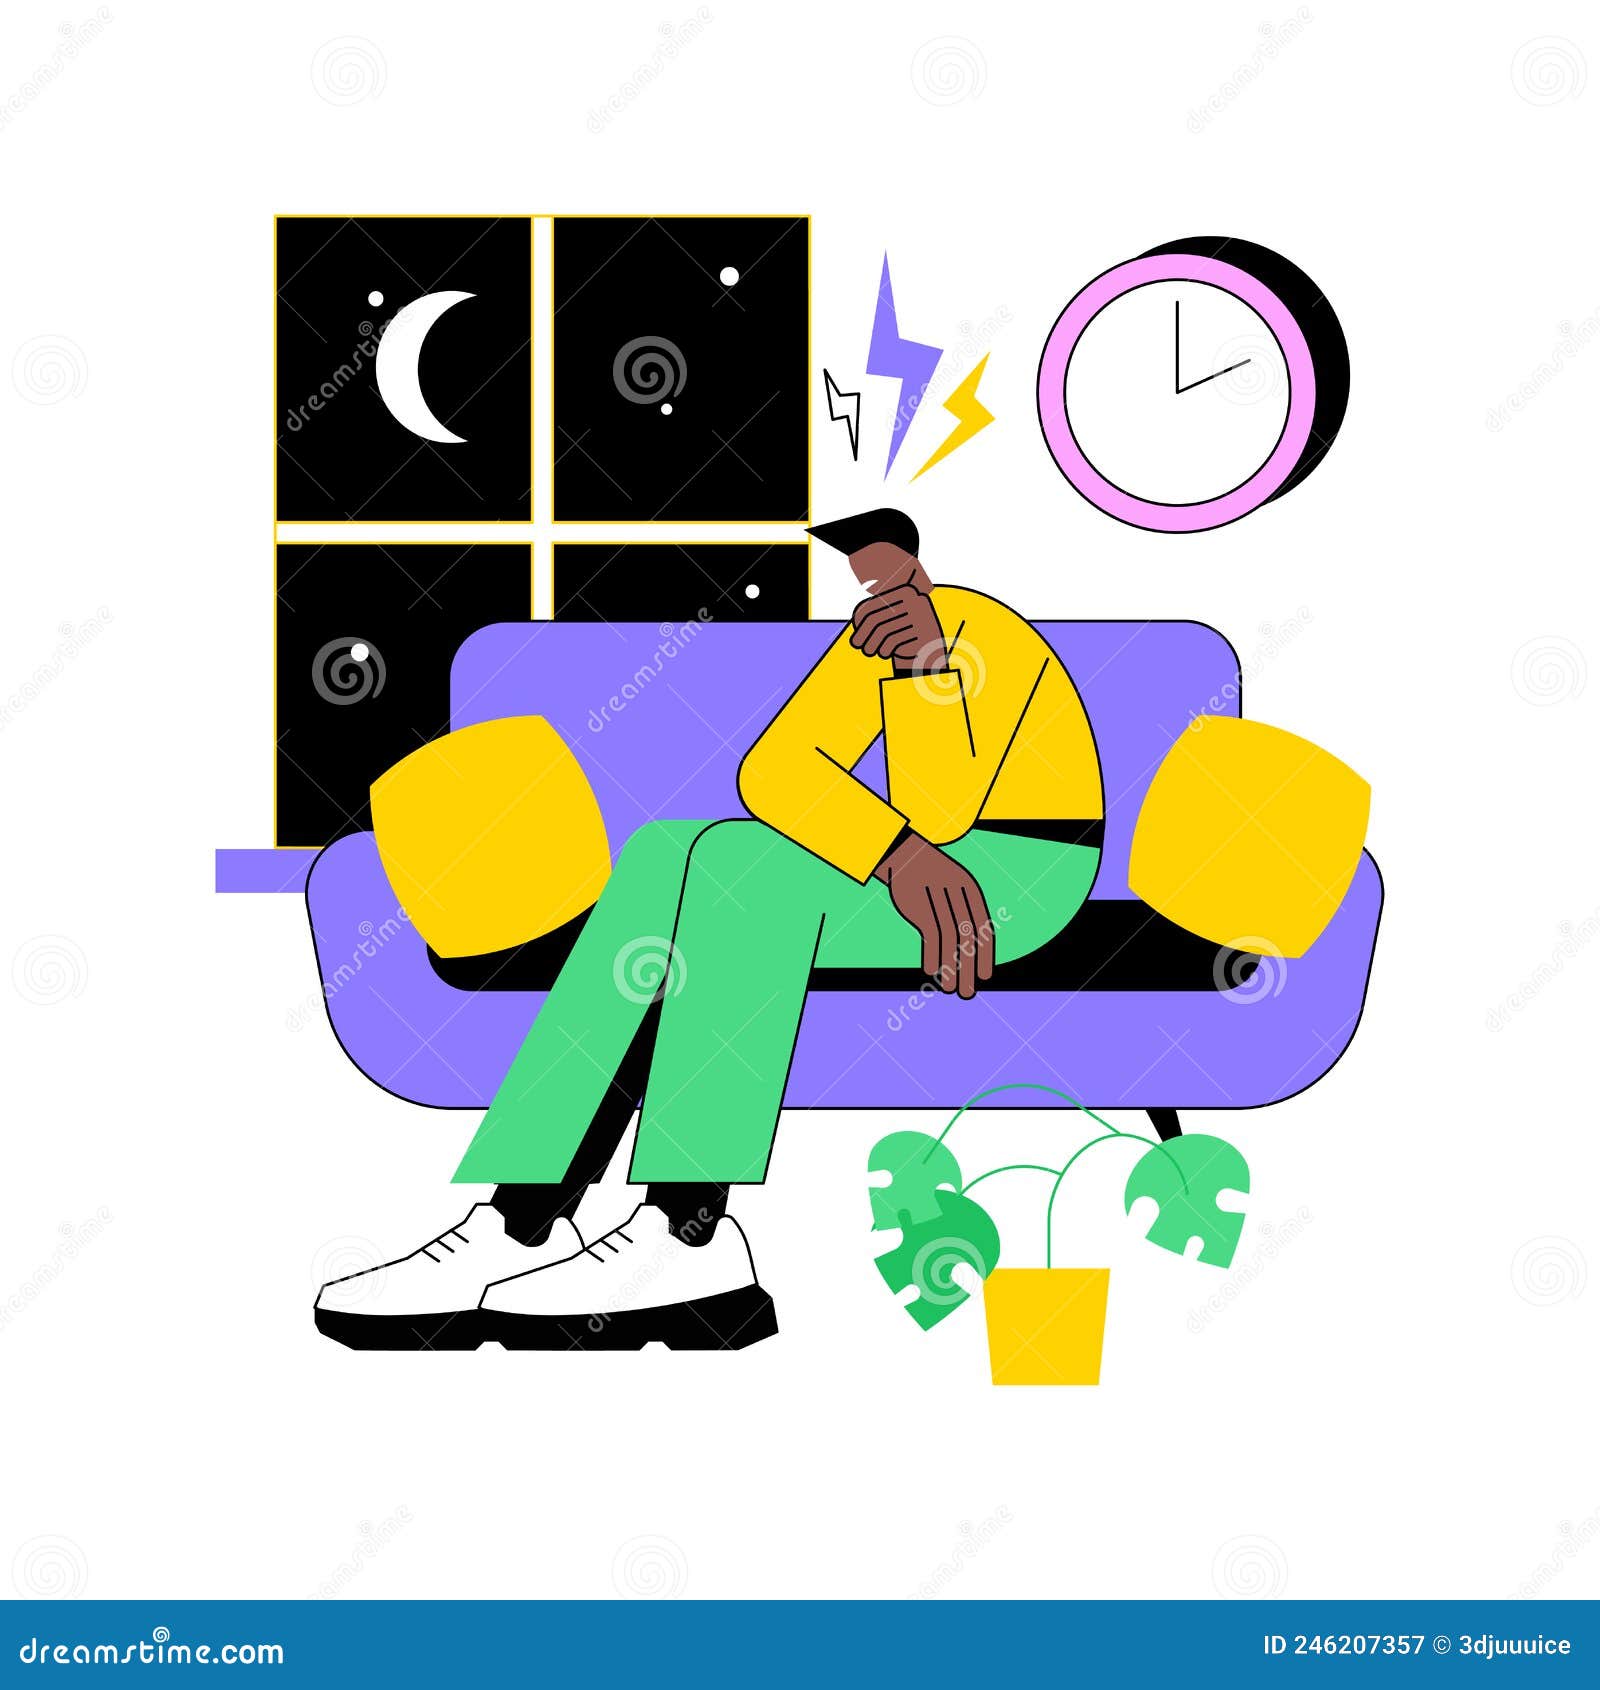 Sleep Behavior Disorder Abstract Concept Vector Illustration. Stock Vector  - Illustration of abstract, cartoon: 246207357